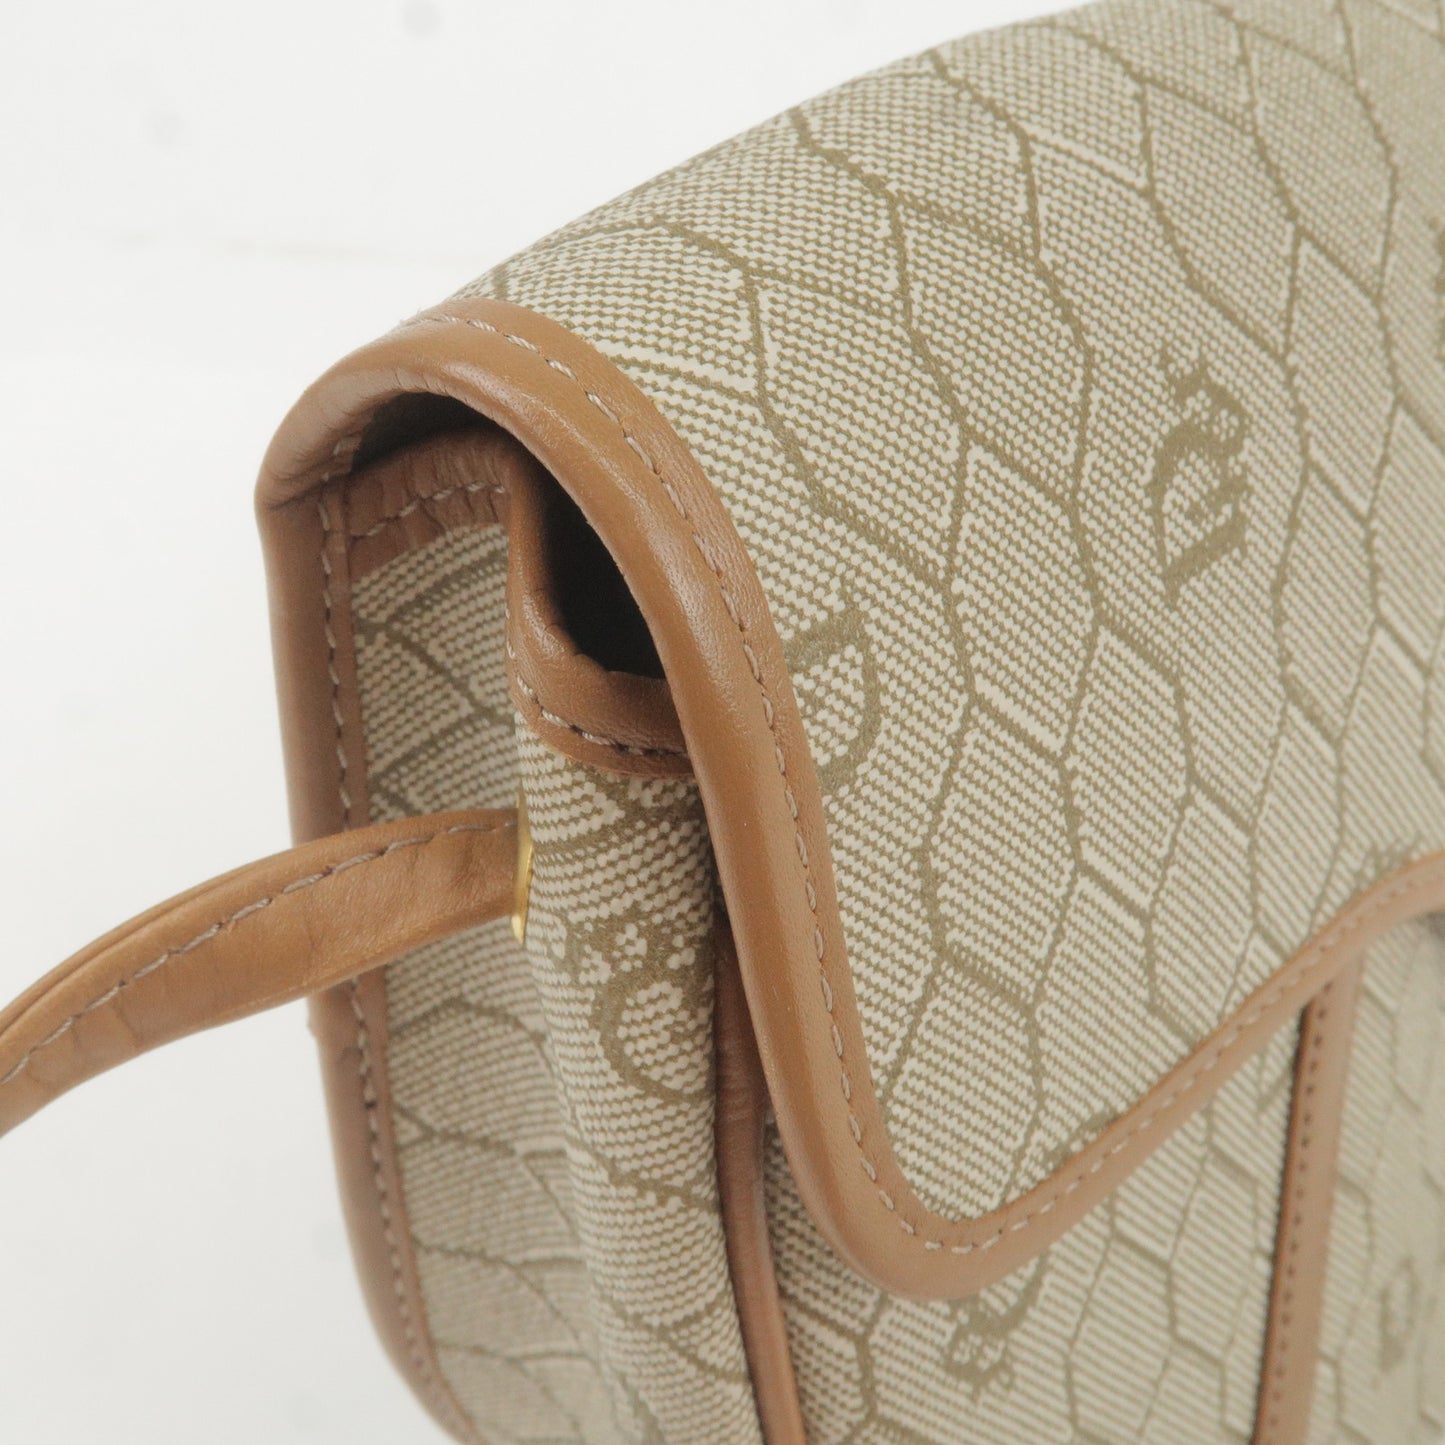 Christian Dior Honeycomb PVC Leather Shoulder Bag Beige Brown